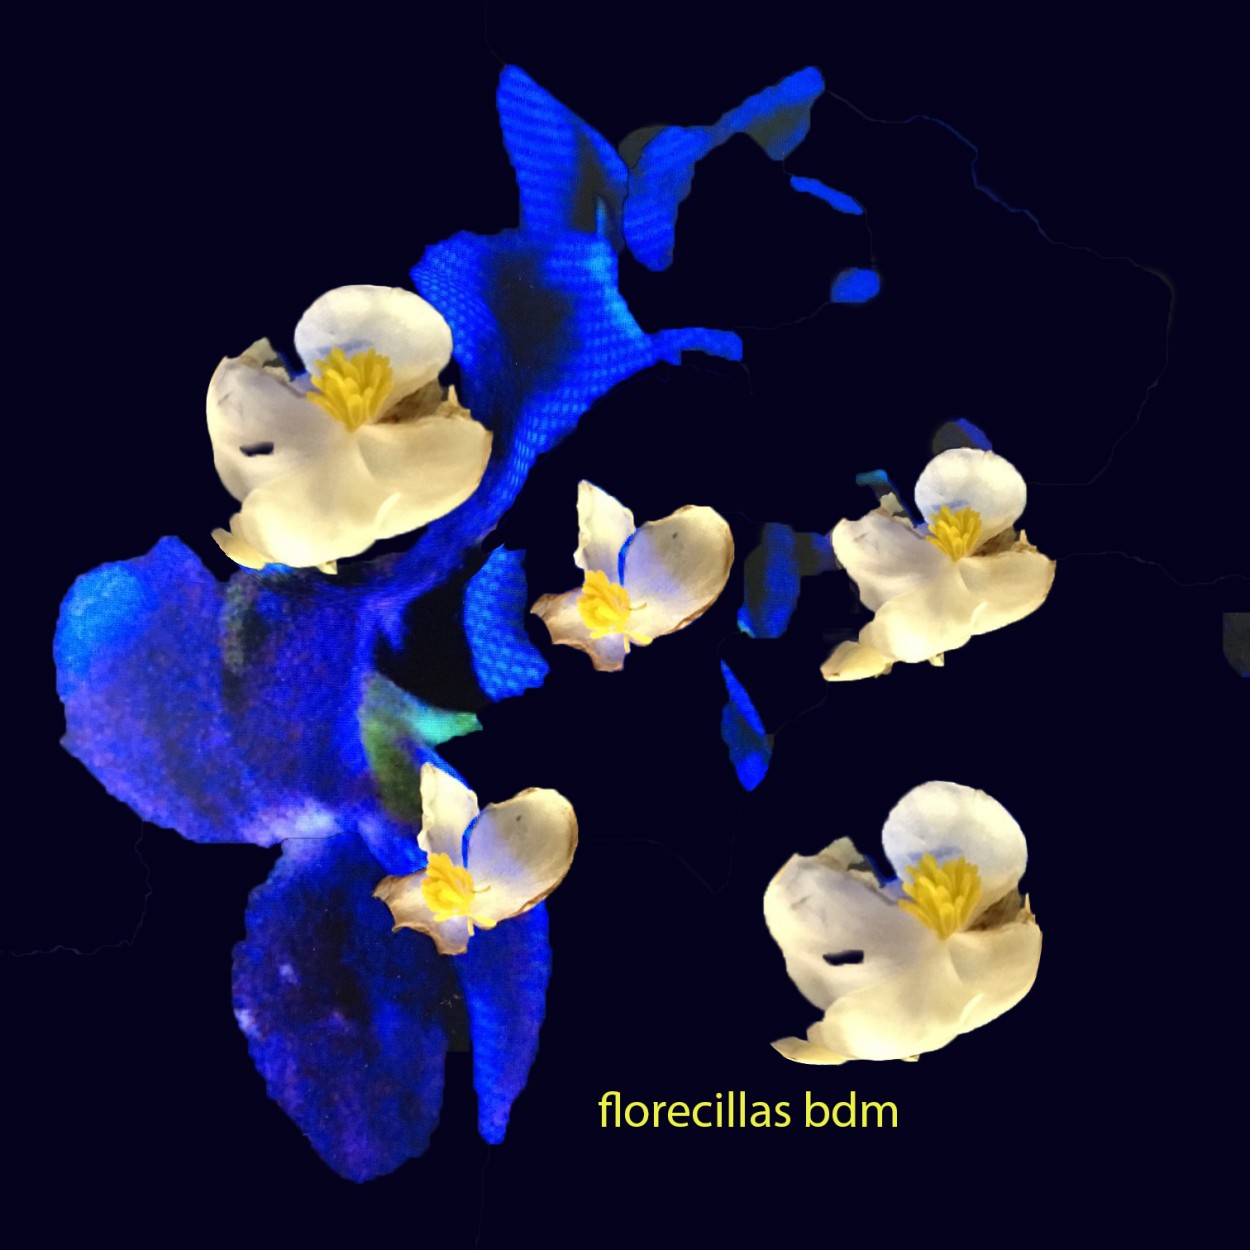 "florecillas con azul" de Beatriz Di Marzio